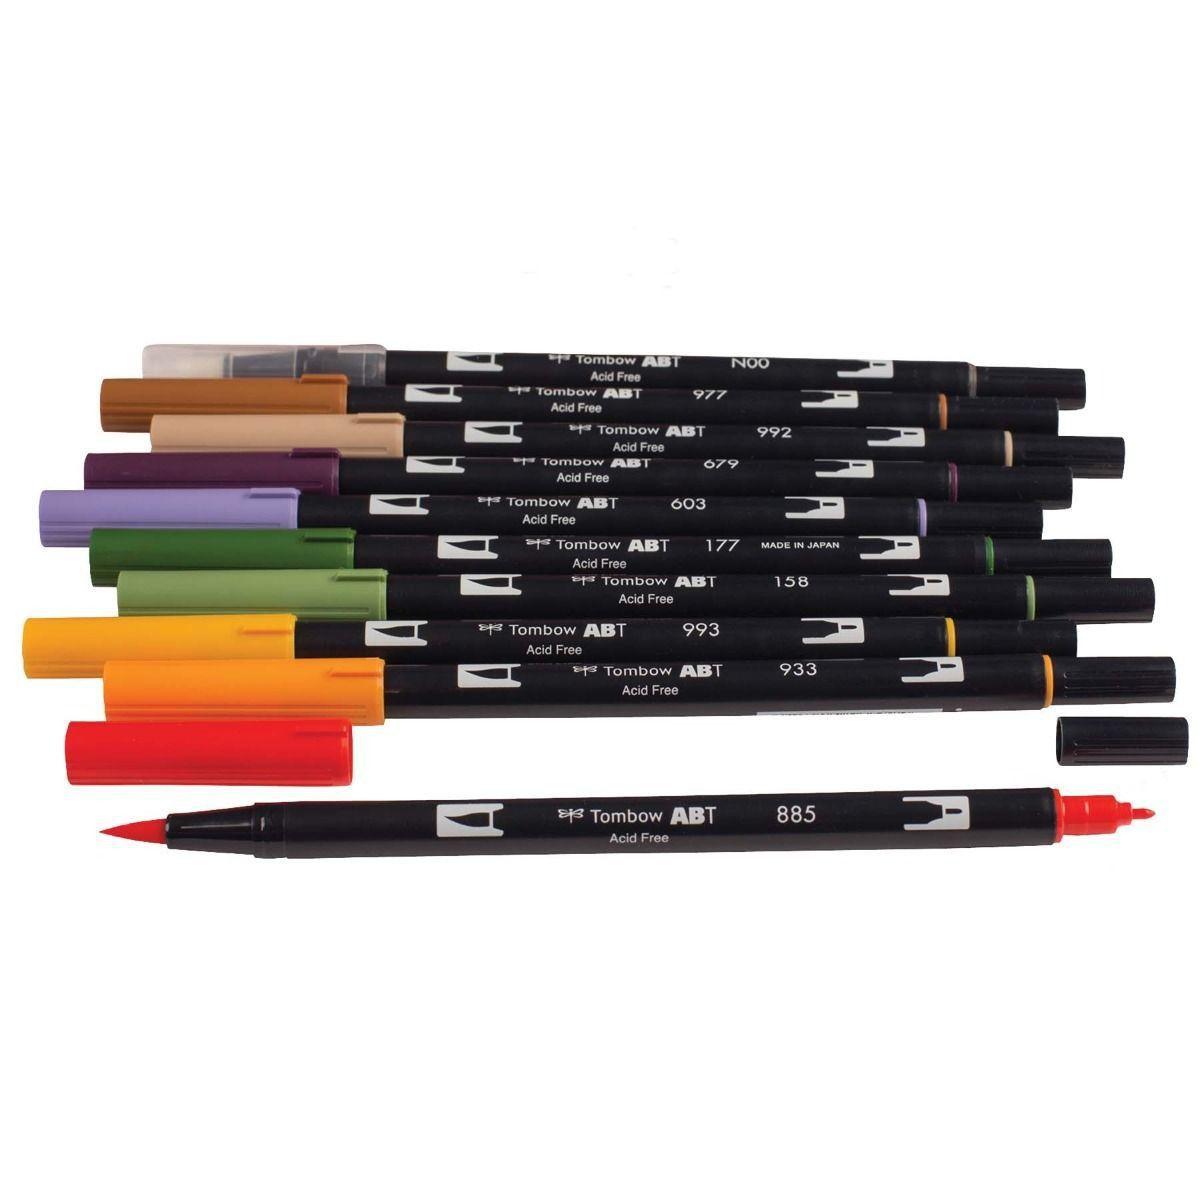 Canetas Dual Brush Tombow Kit c/10 canetas - Secundárias - Vinil Studio